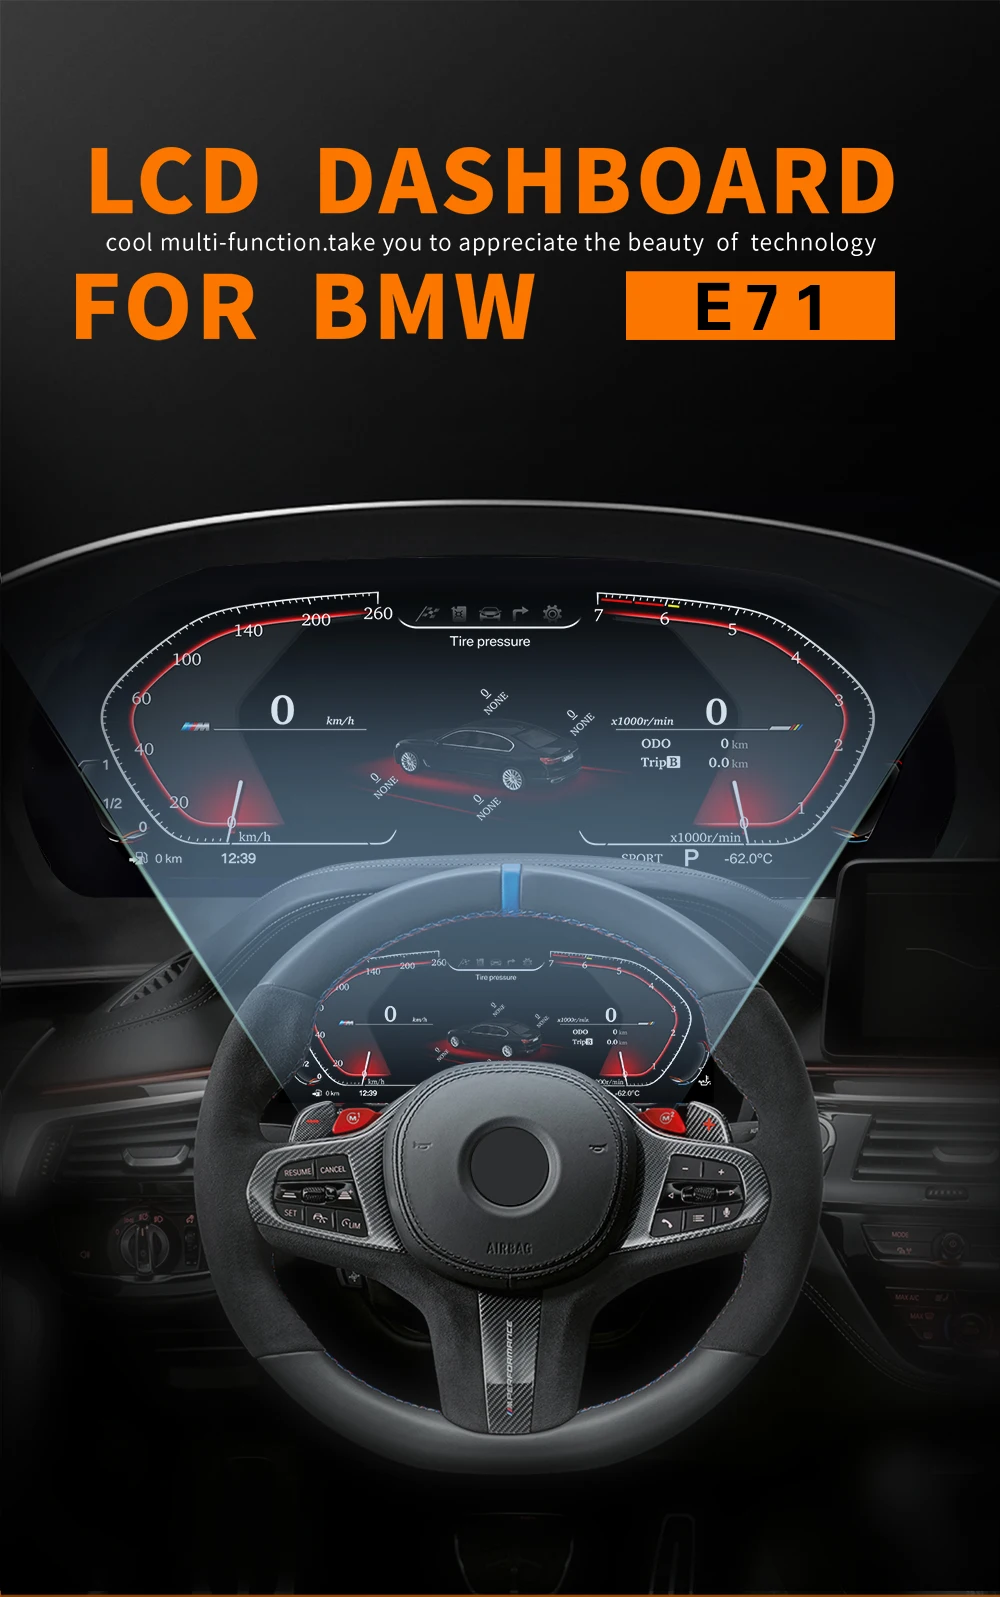 2024 najnowsza oryginalna cyfrowa tablica przyrządów LCD do BMW X6 E71 kontrolera prędkościomierza na desce rozdzielczej i prędkościomierz HUD wyświetlacz